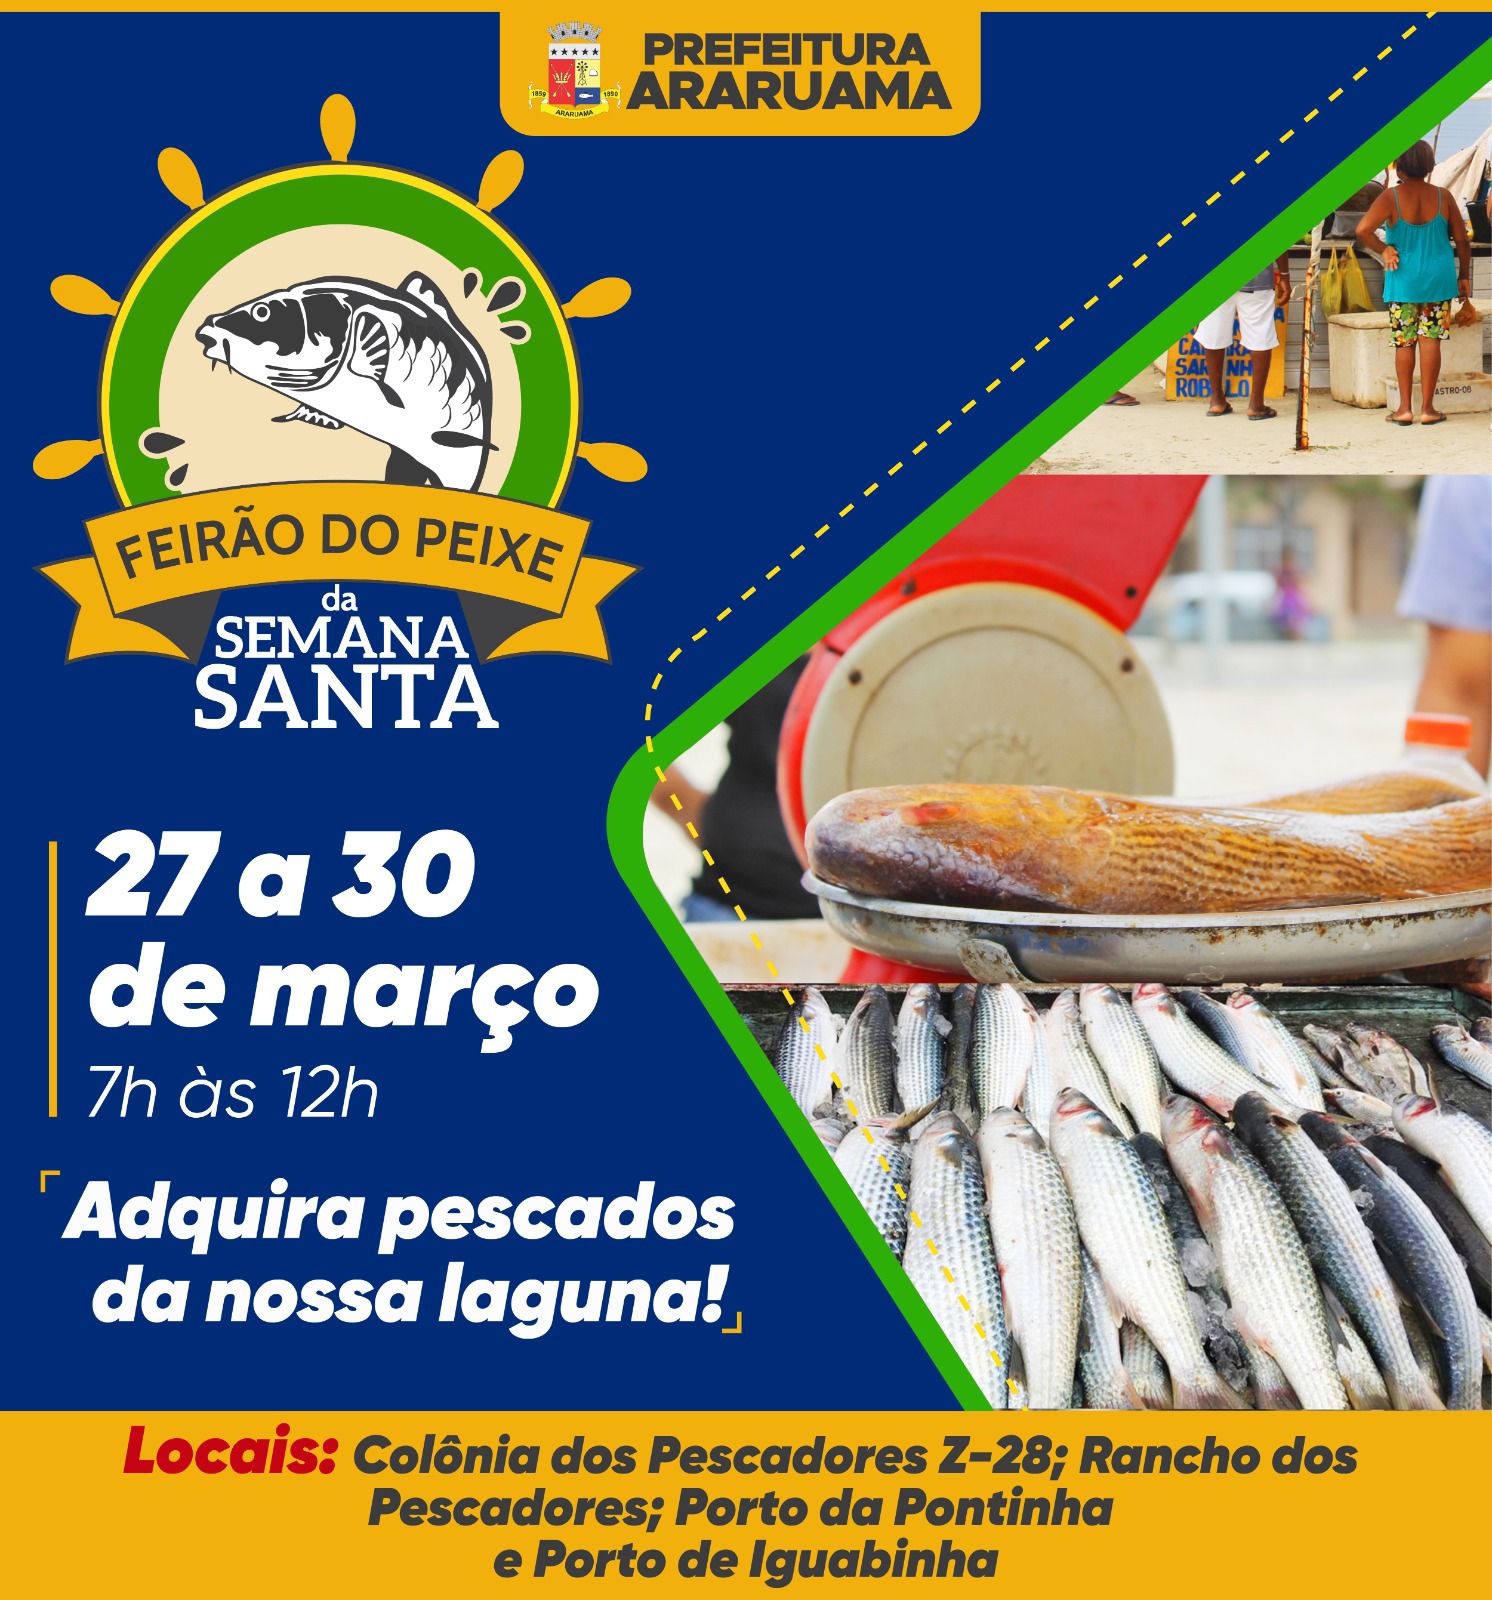 Prefeitura de Araruama vai realizar a 8º edição do Feirão do Peixe durante a Semana Santa